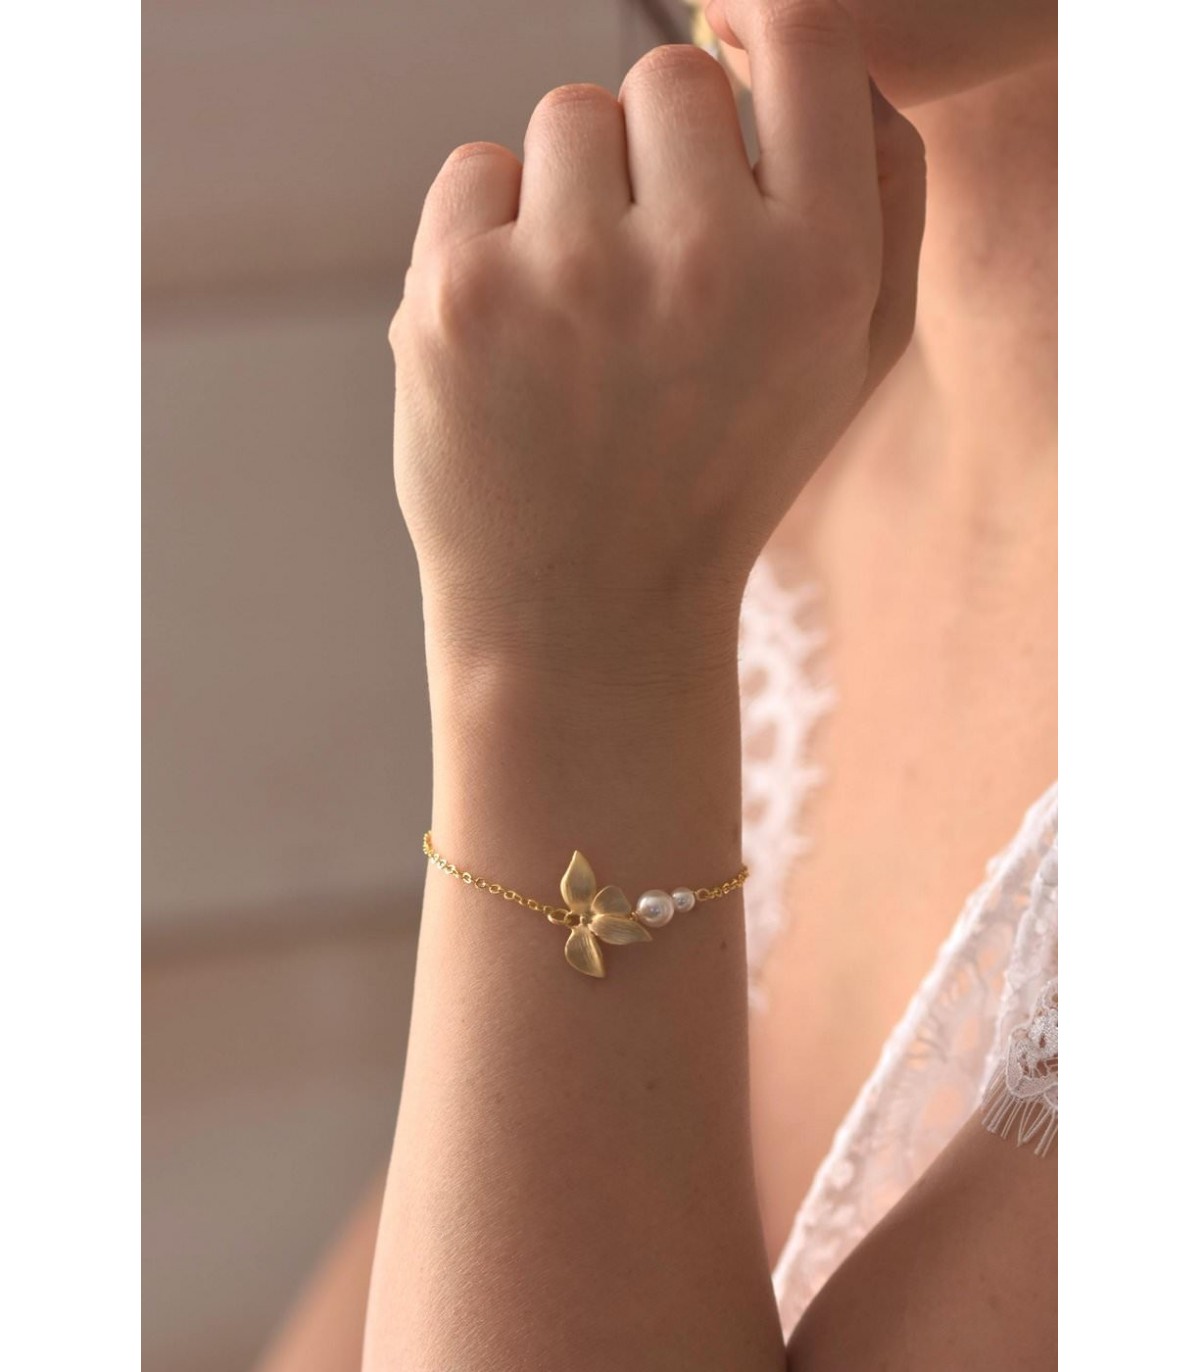 Bracelet de mariée Sylvia avec orchidée et perles nacrées.